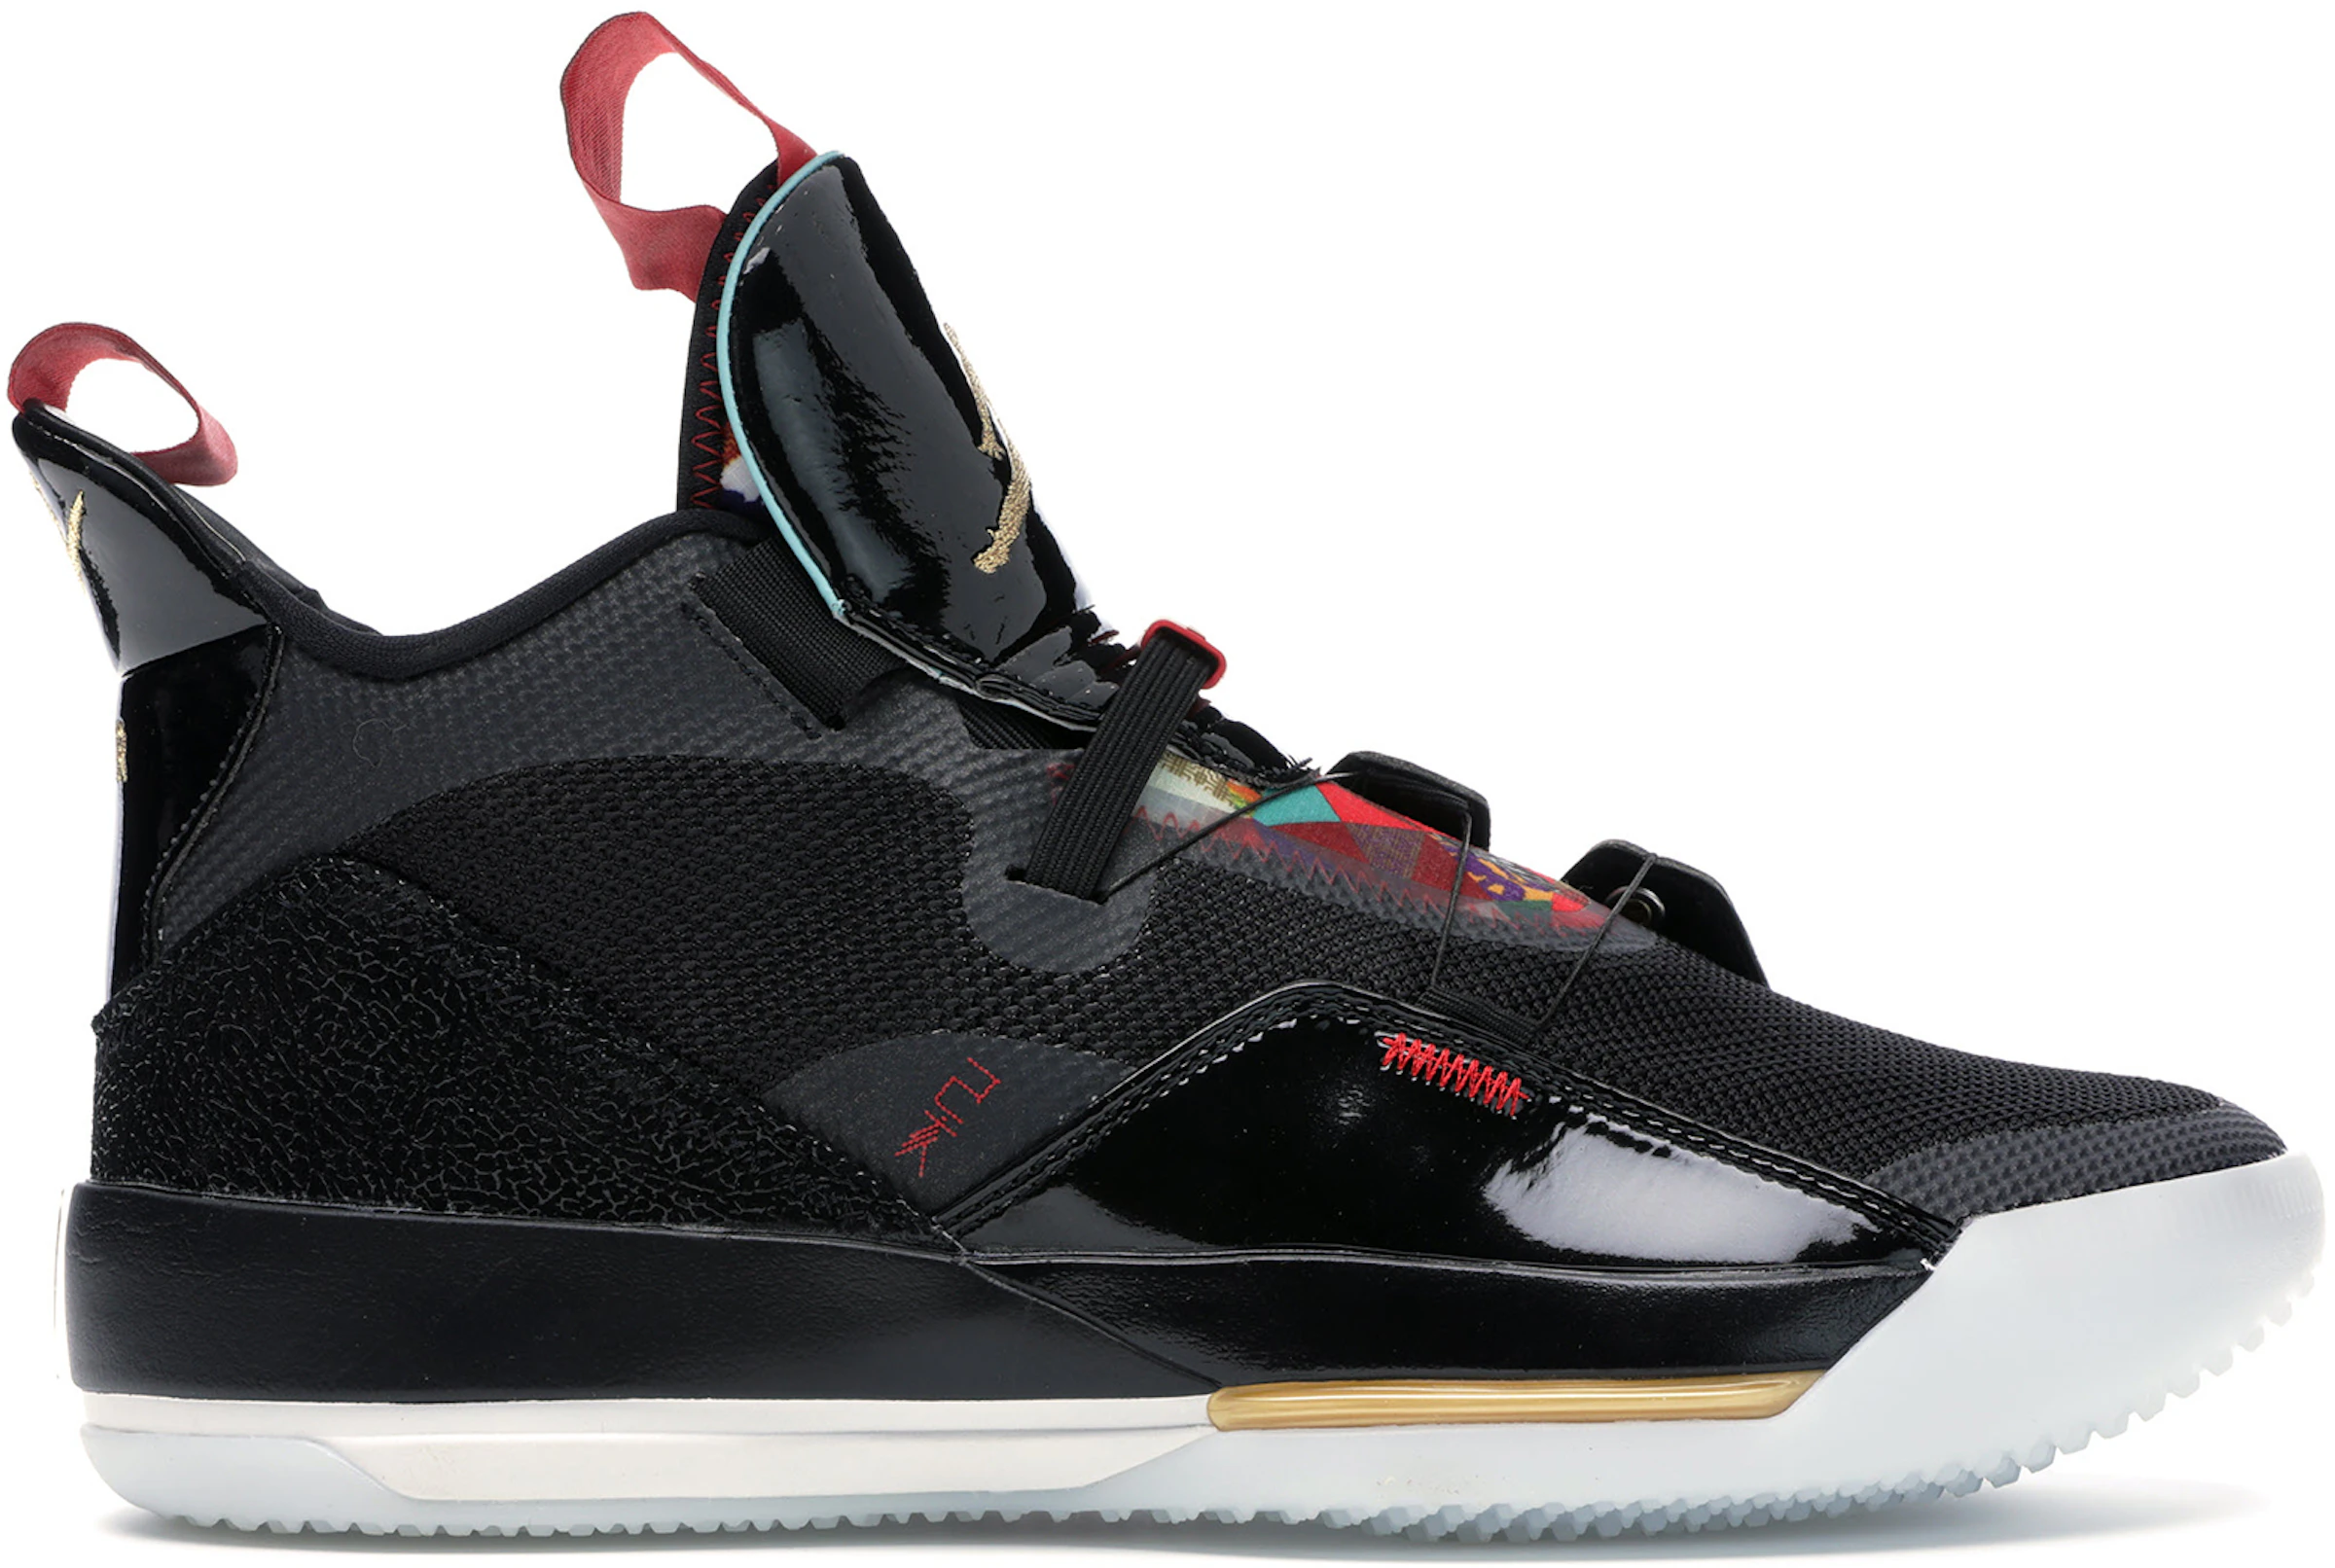 Jordan 33 Calzado y sneakers nuevos - StockX